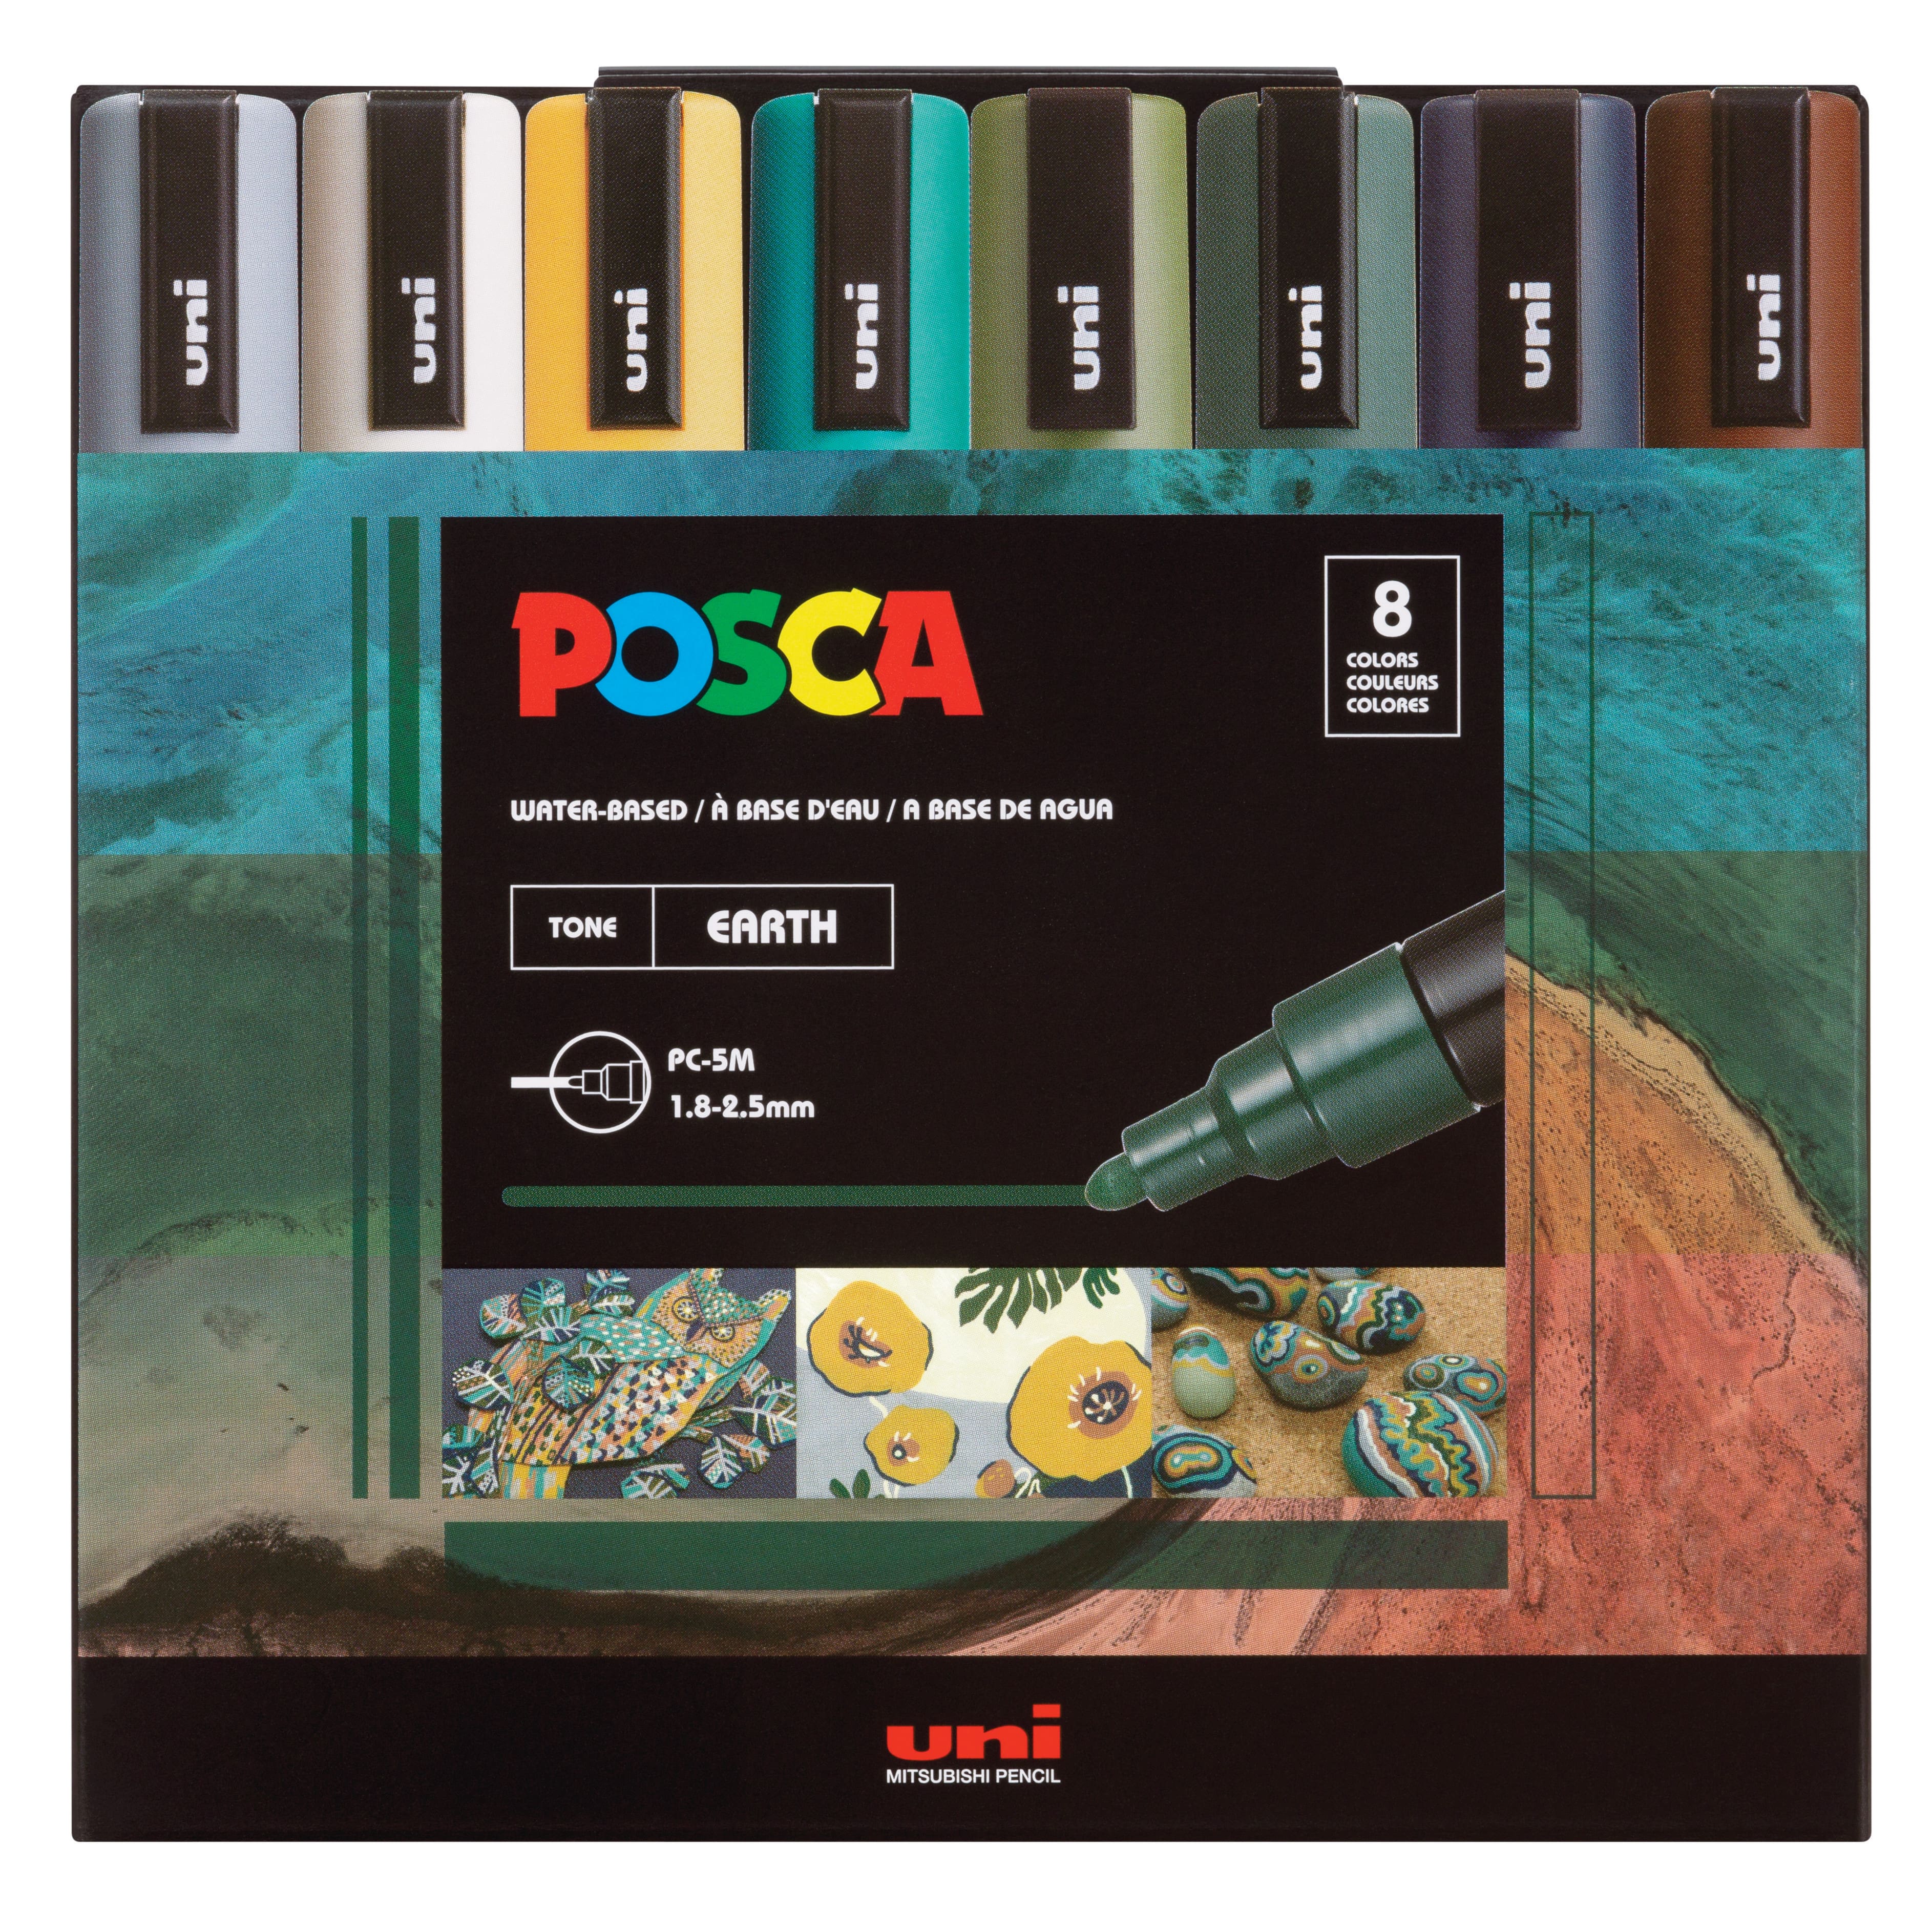 48 Piece Paint Pen Value Pack Set by Craft Smart®